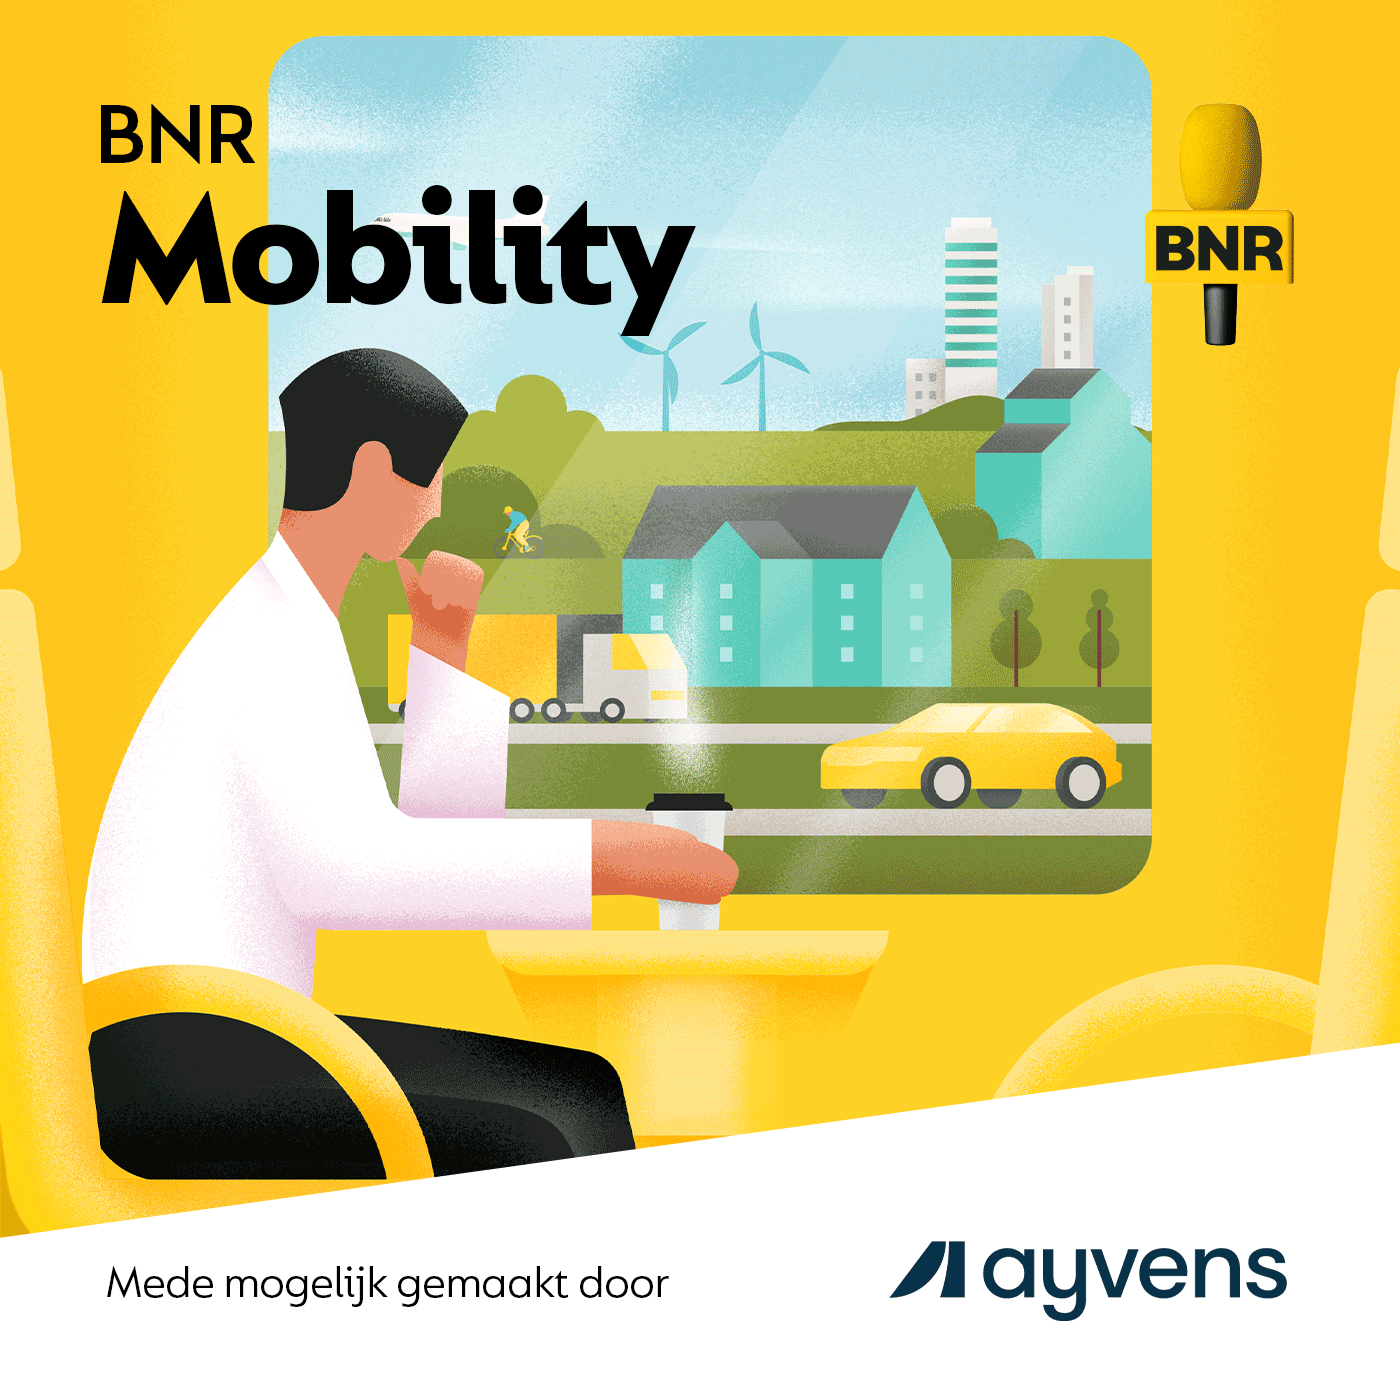 BNR Mobility